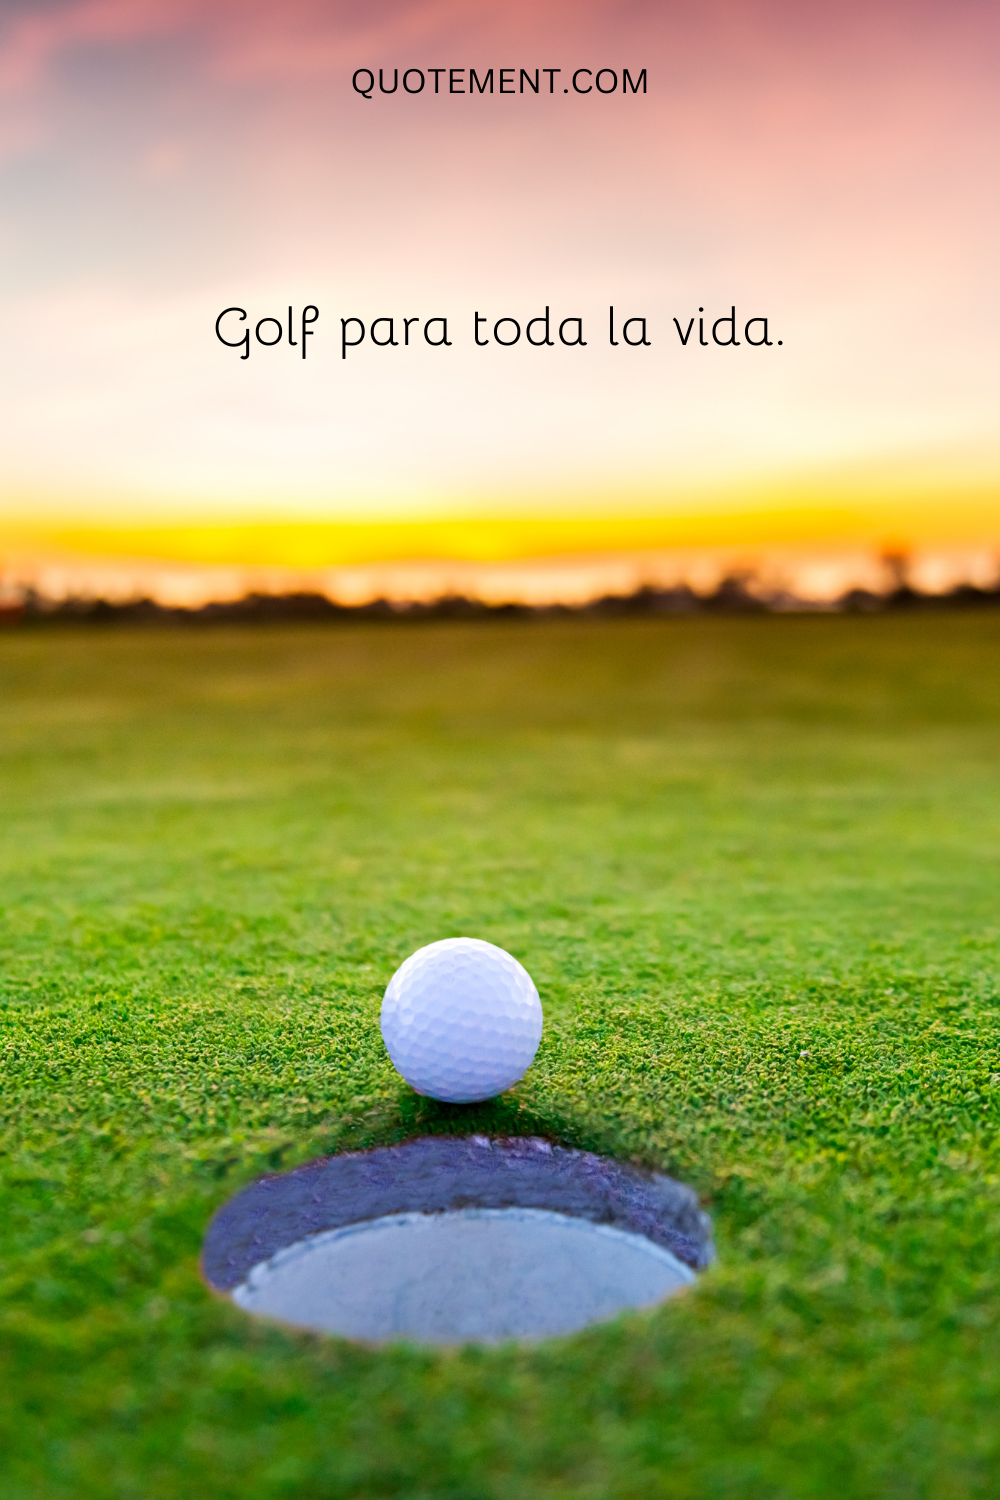 Golf para toda la vida.